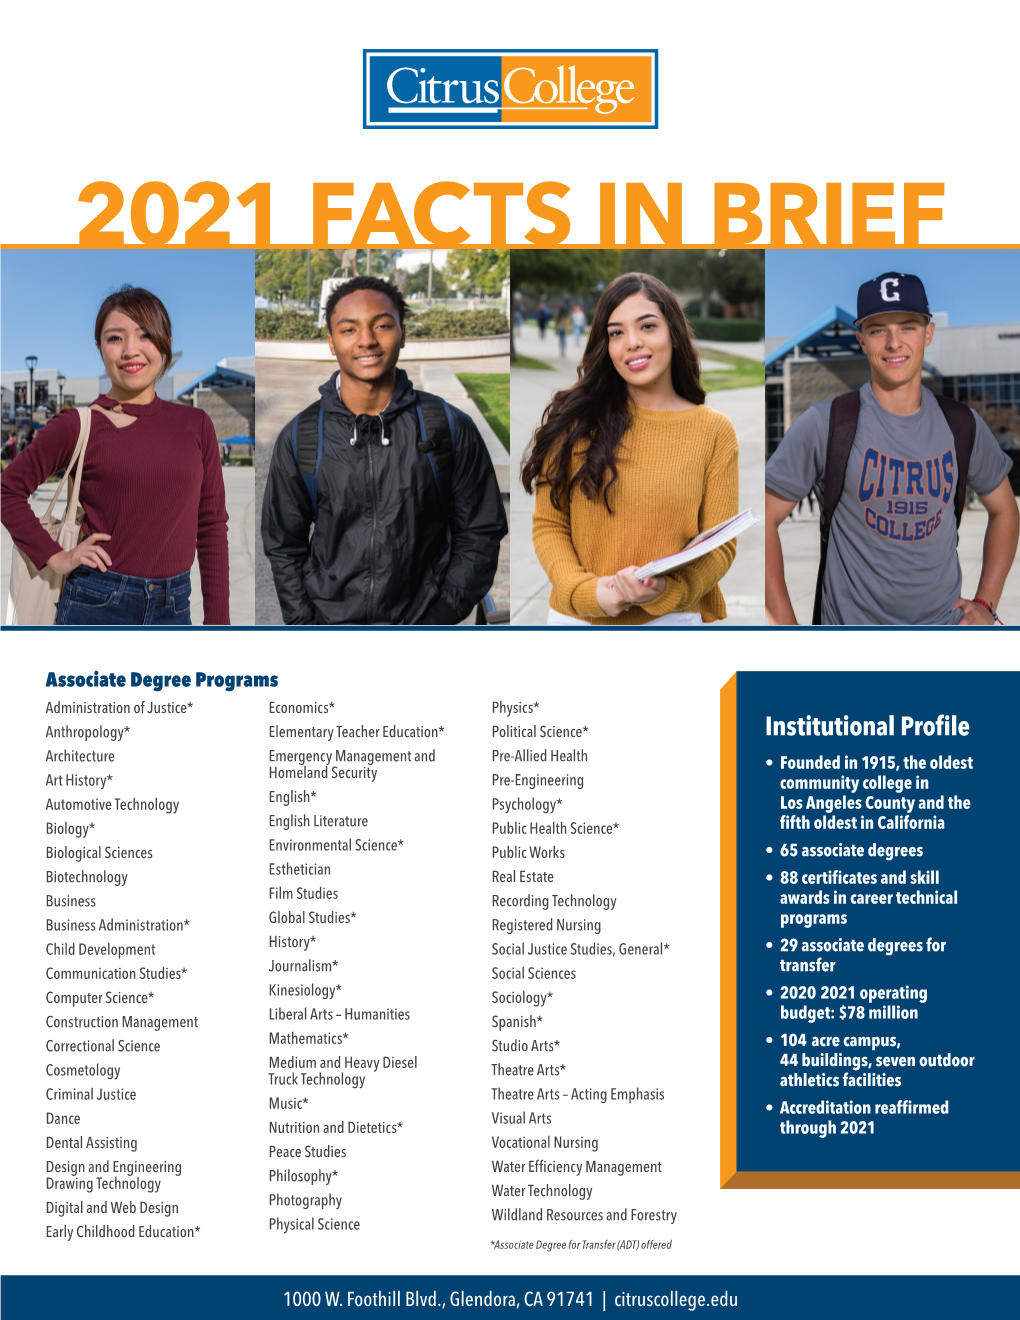 Citrus College Facts in Brief 2021